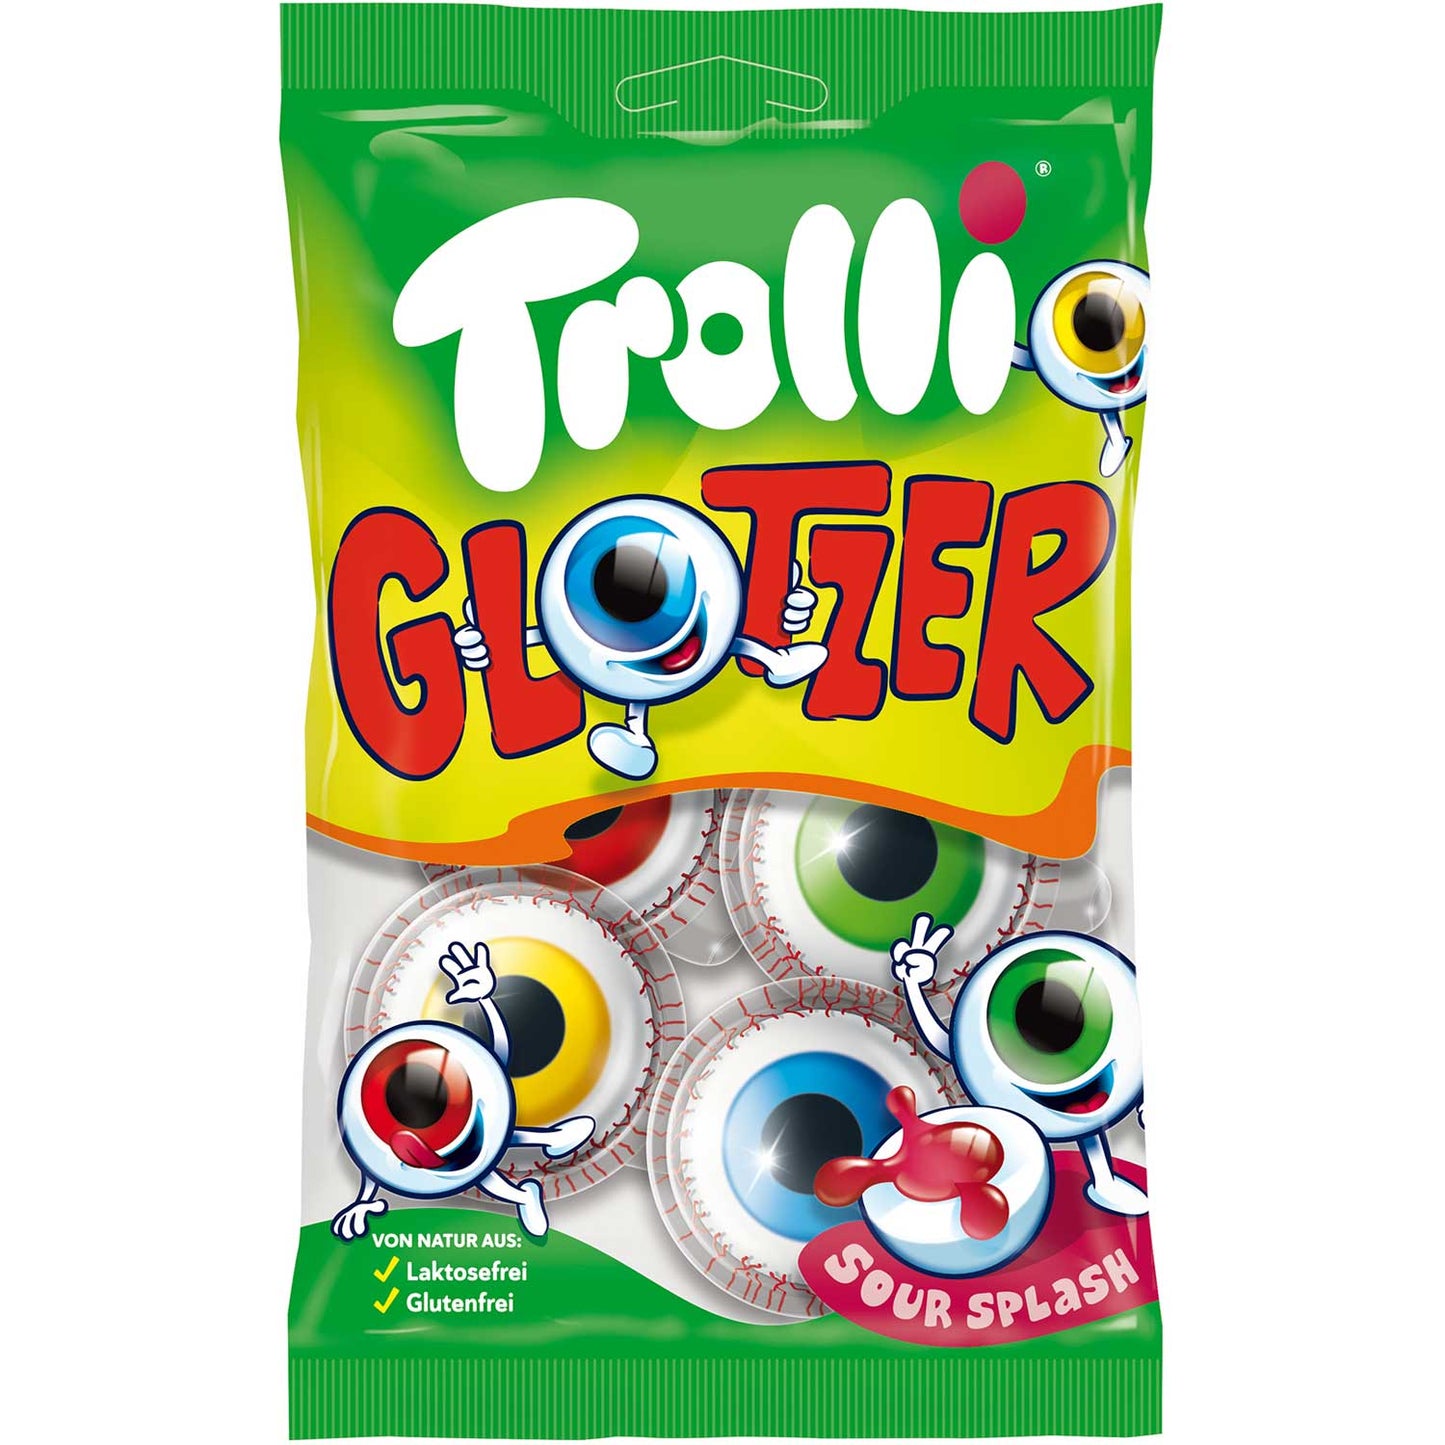 Trolli Glotzer 4er - Candyshop.ch